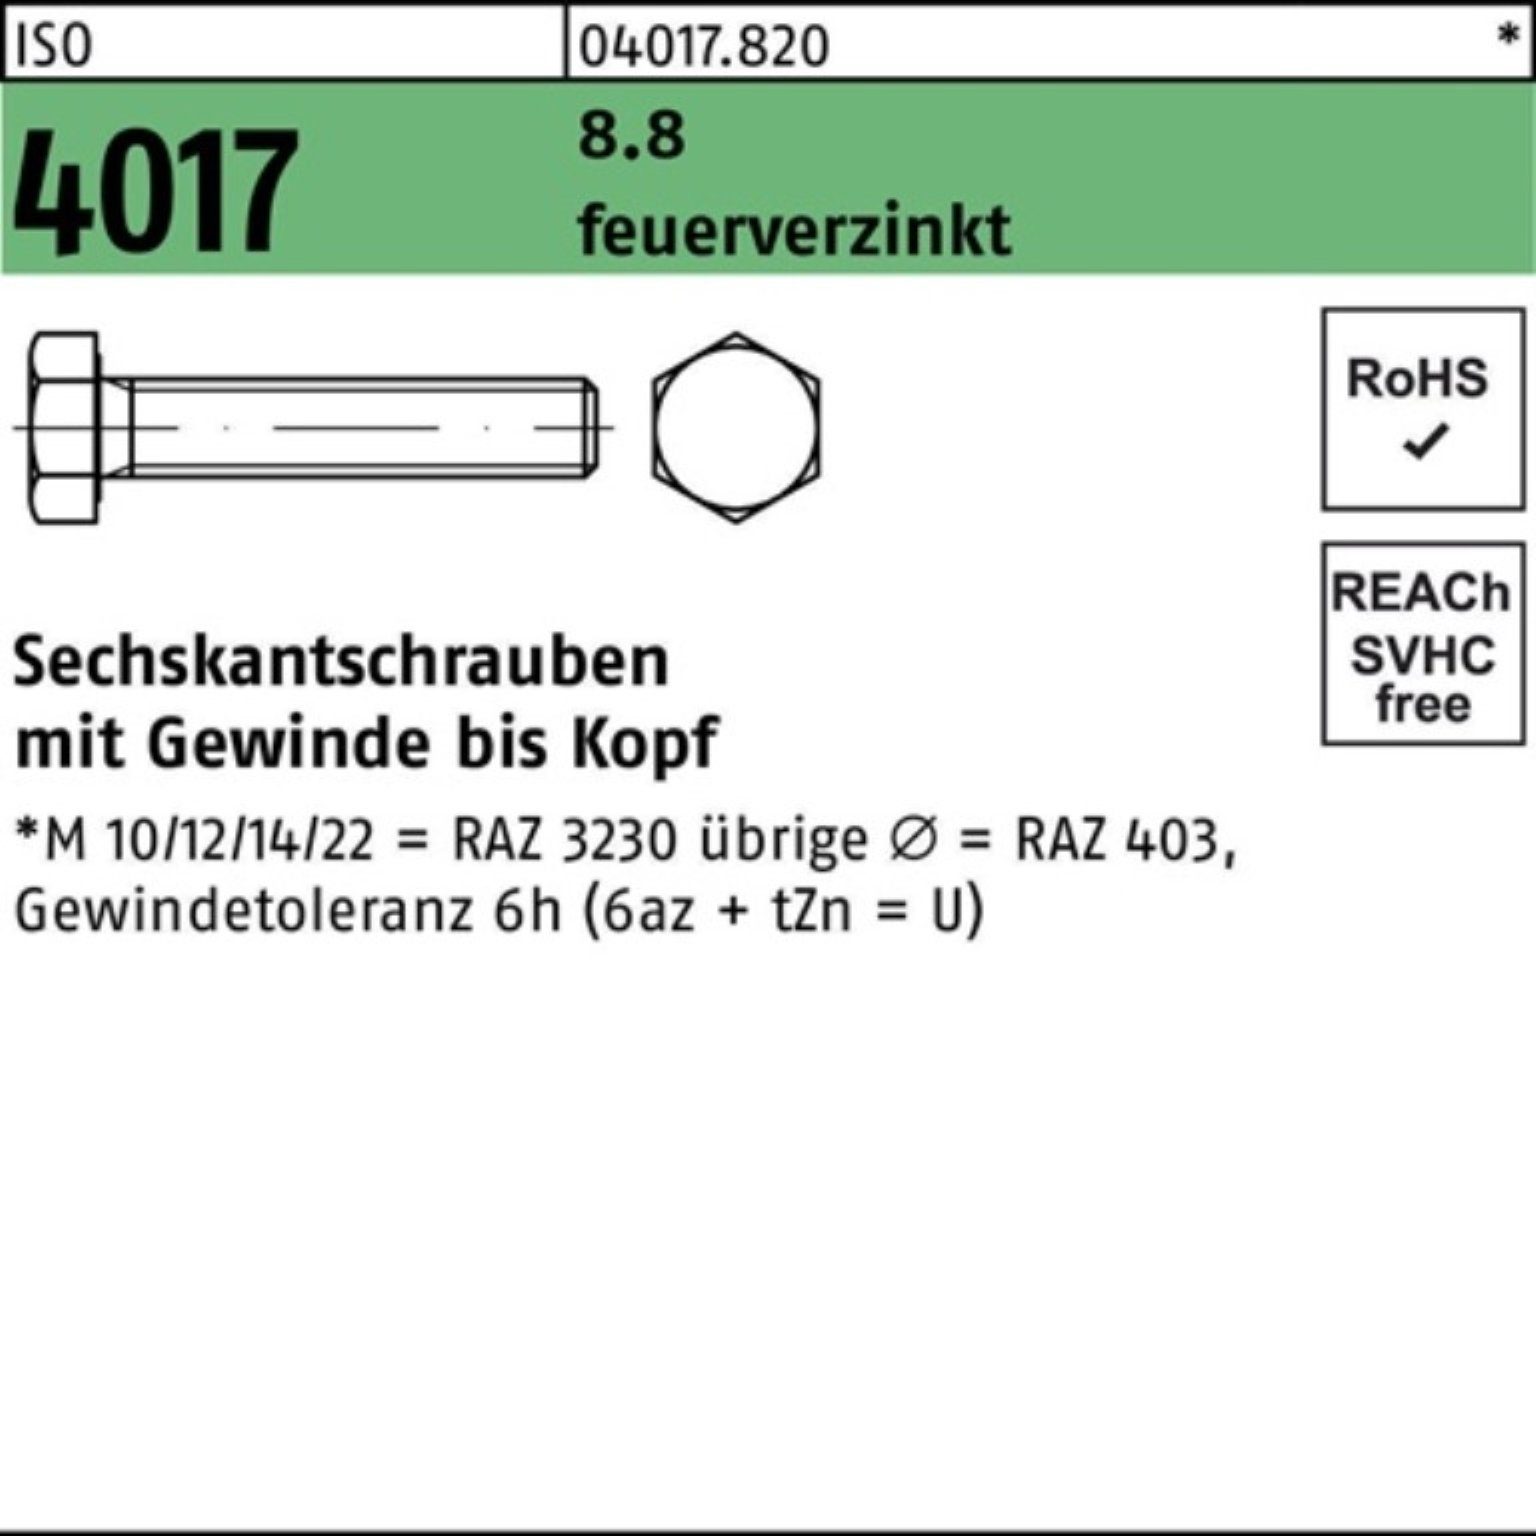 Bufab Sechskantschraube 100er Pack Sechskantschraube 4017 St feuerverz. 25 VG ISO 8.8 45 M20x